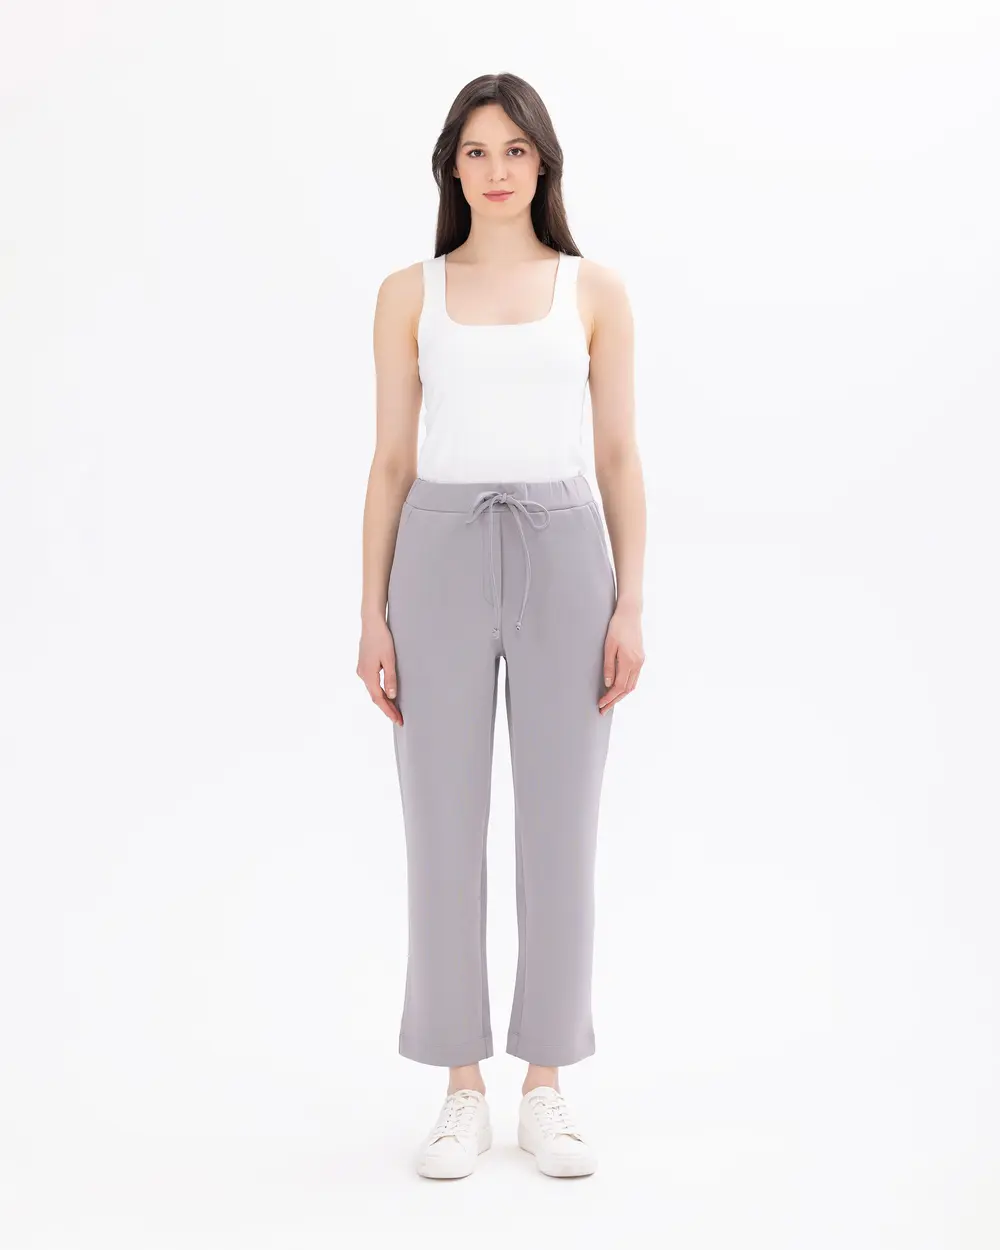 Elastic Waist Ankle-Length Scuba Fabric Pants